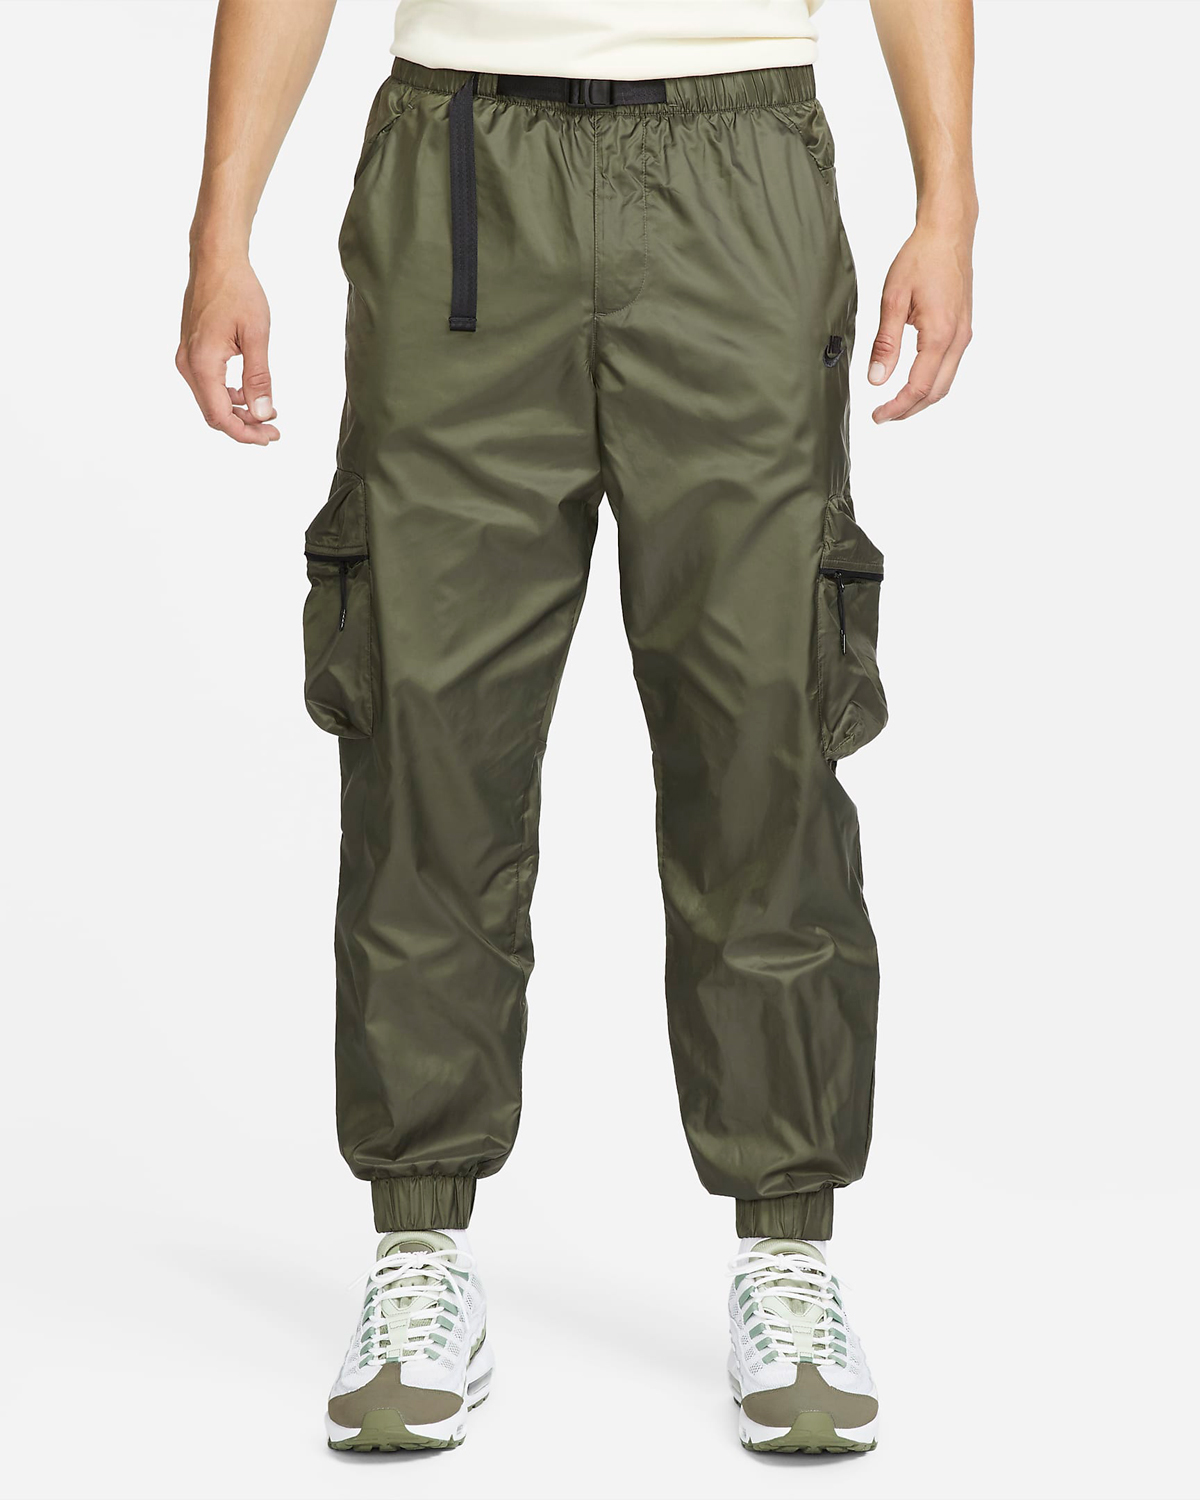 Nike Tech Lined Woven Pants Cargo Khaki